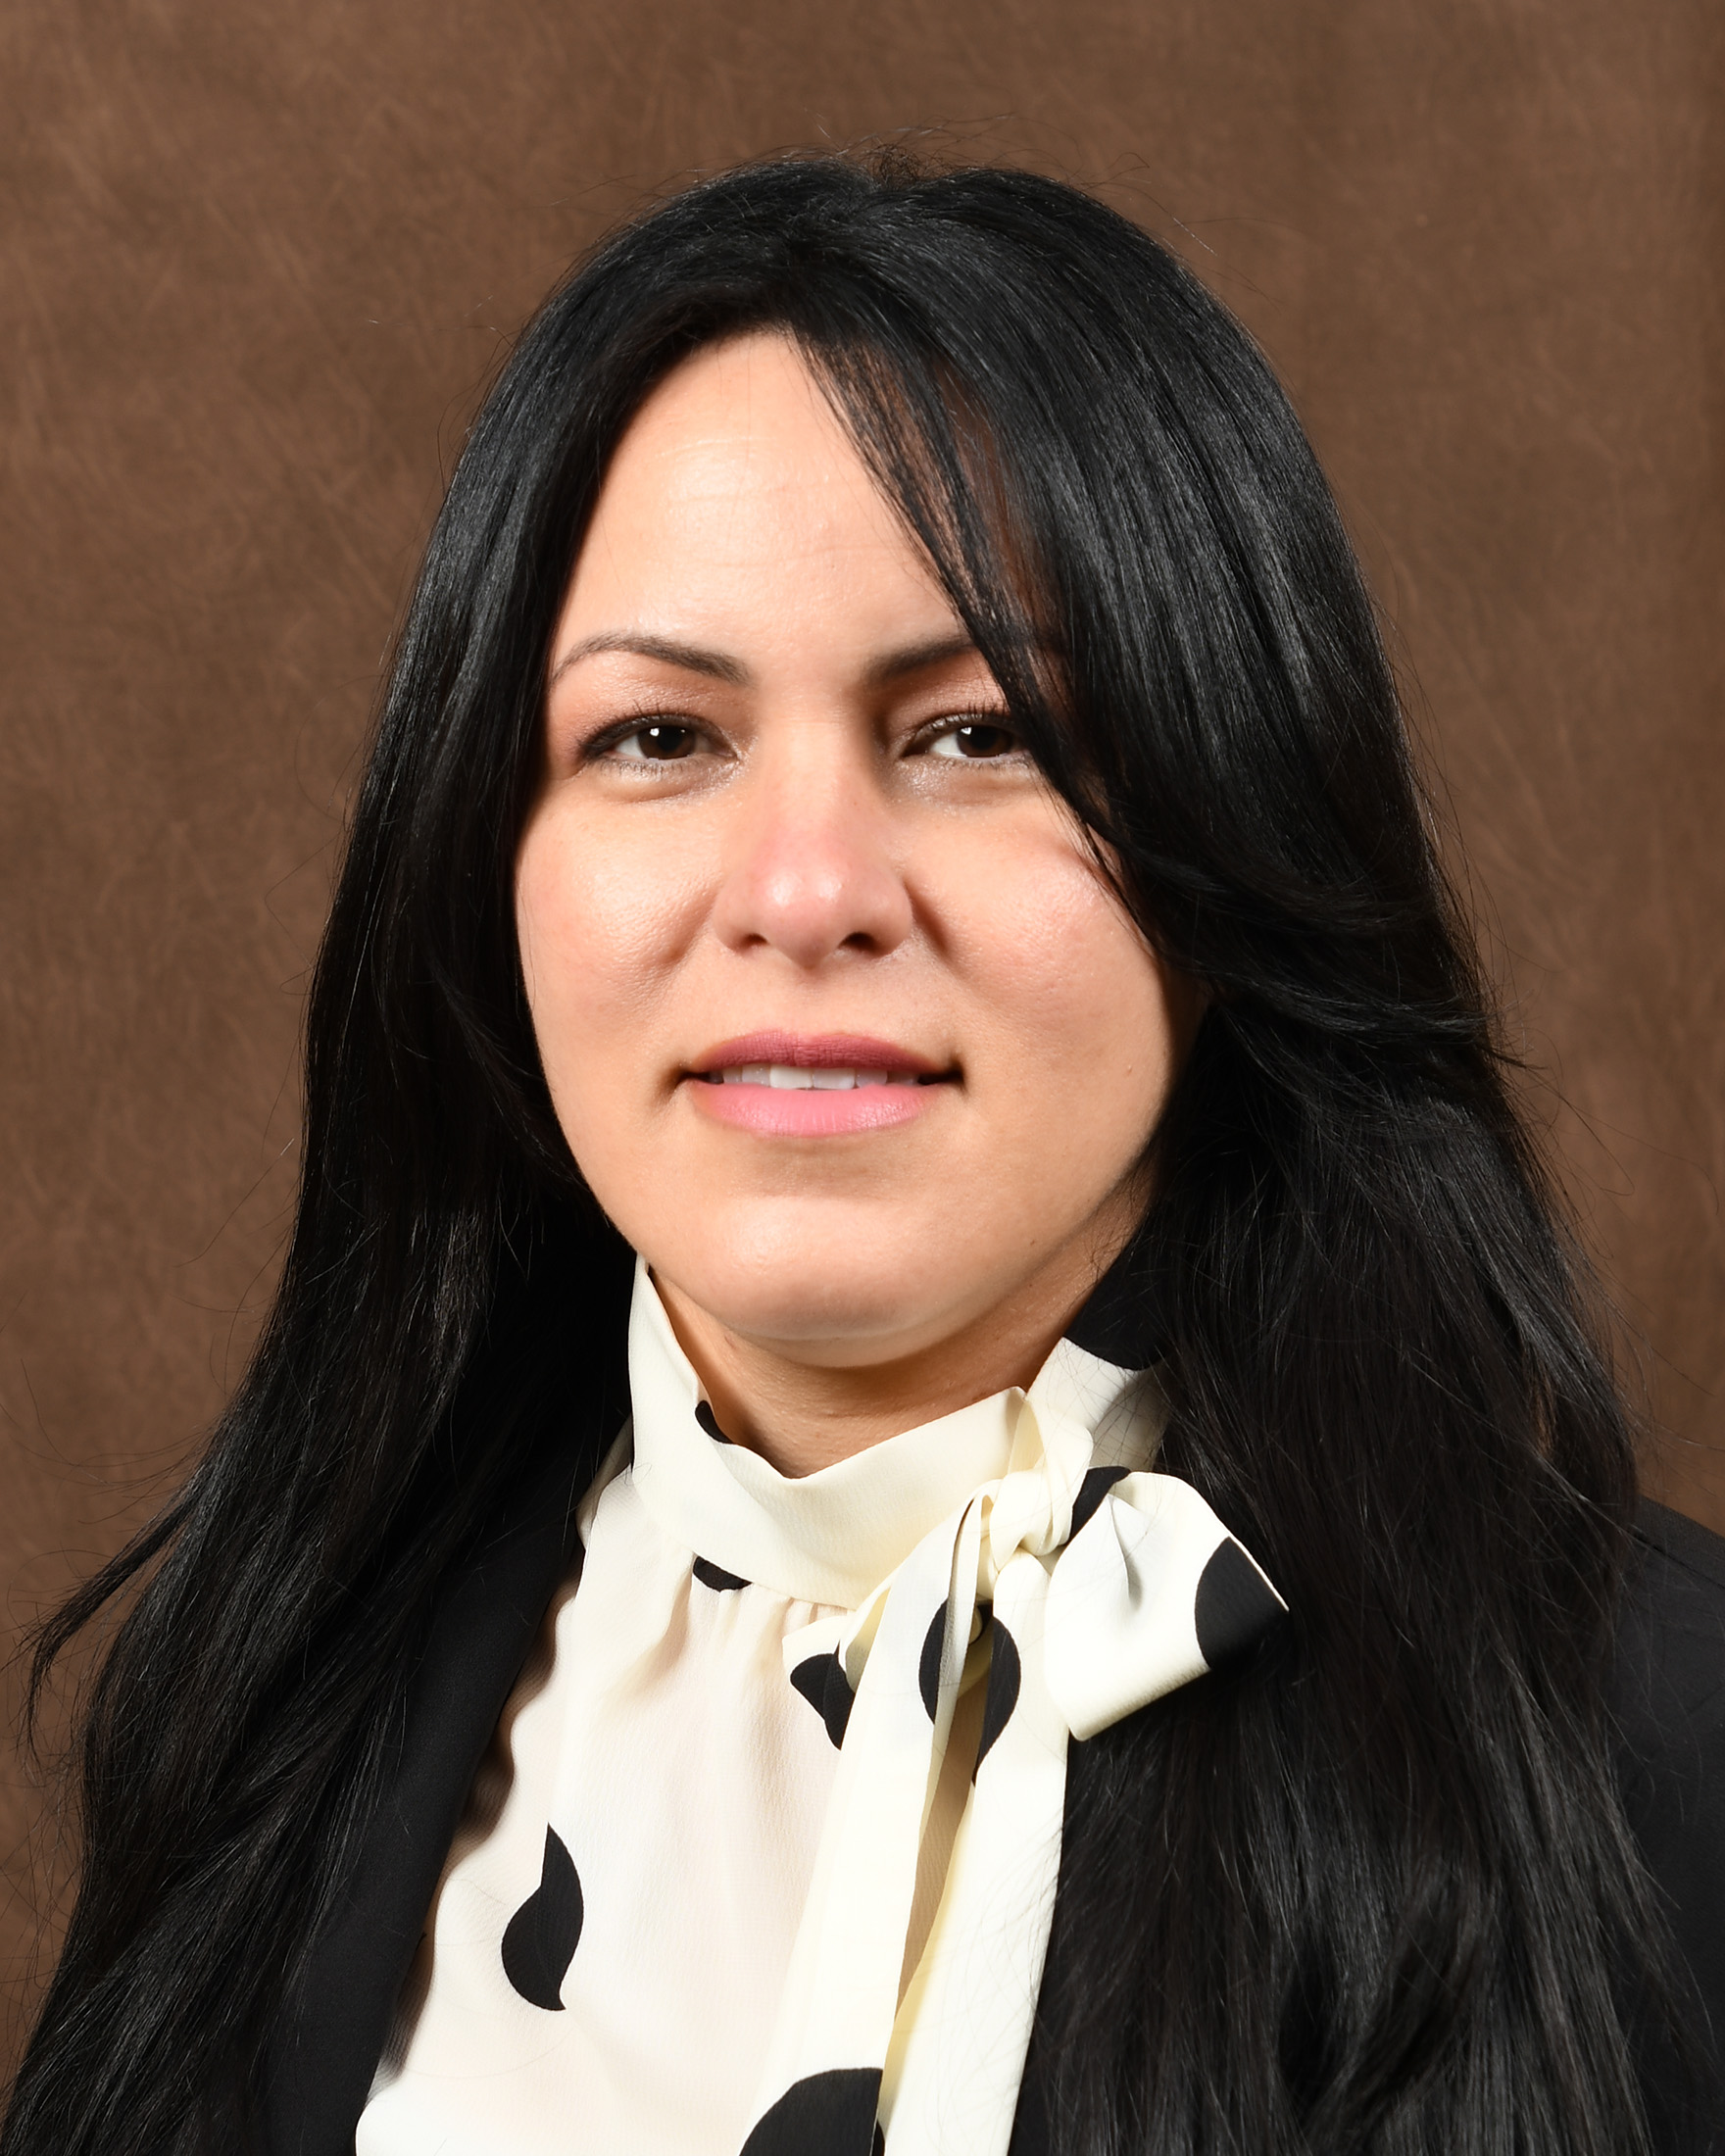 Marile Parra Llabres, MD